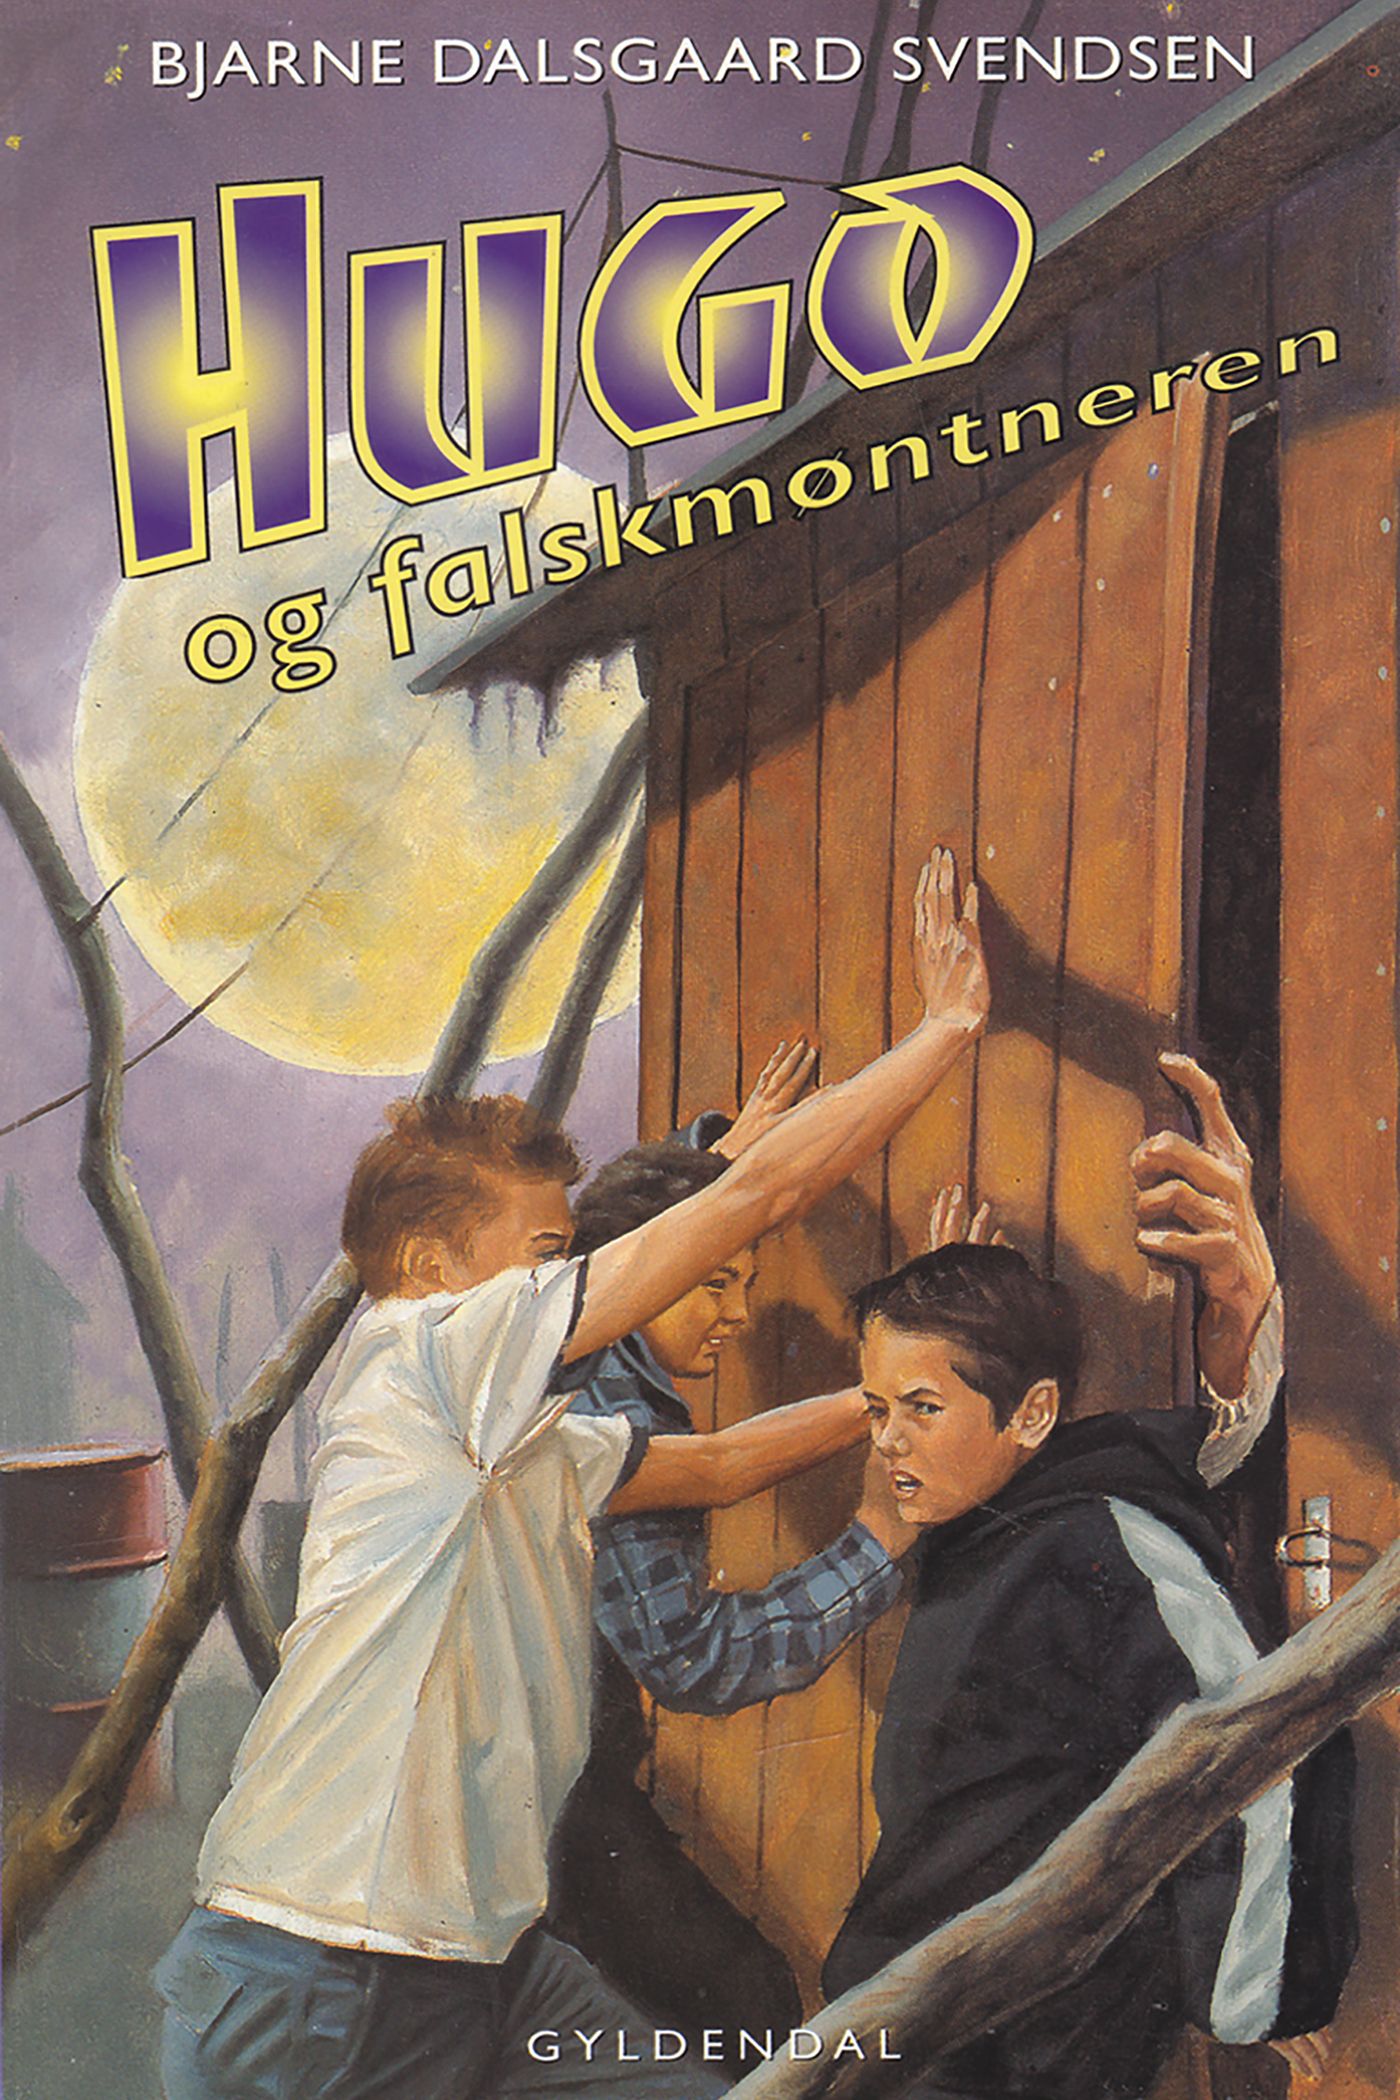 Hugo og falskmøntneren, eBook by Bjarne Dalsgaard Svendsen